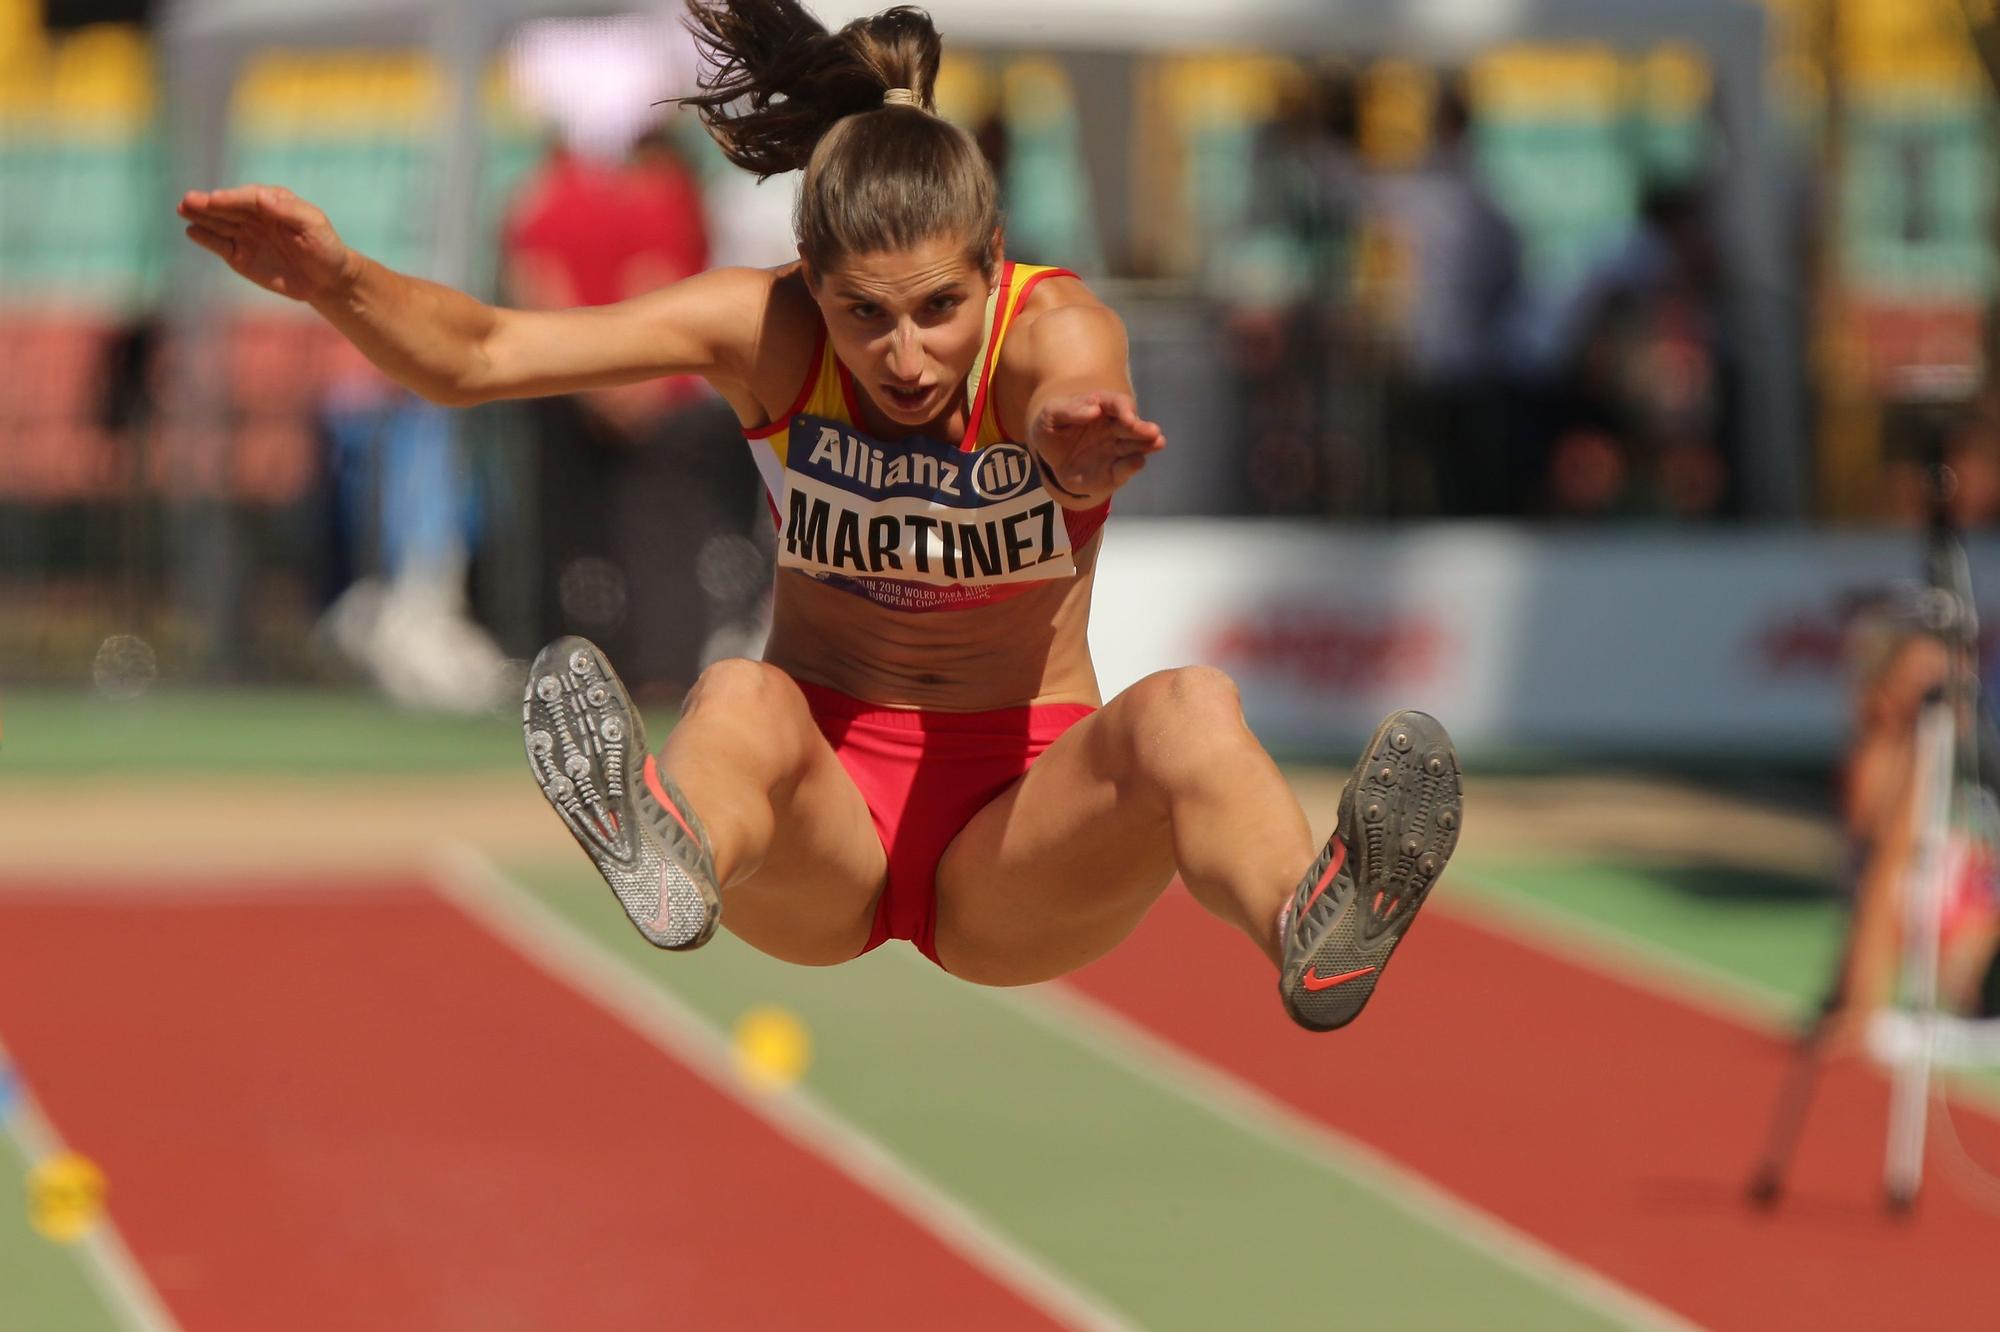 La atleta madrileña durante uno de sus saltos